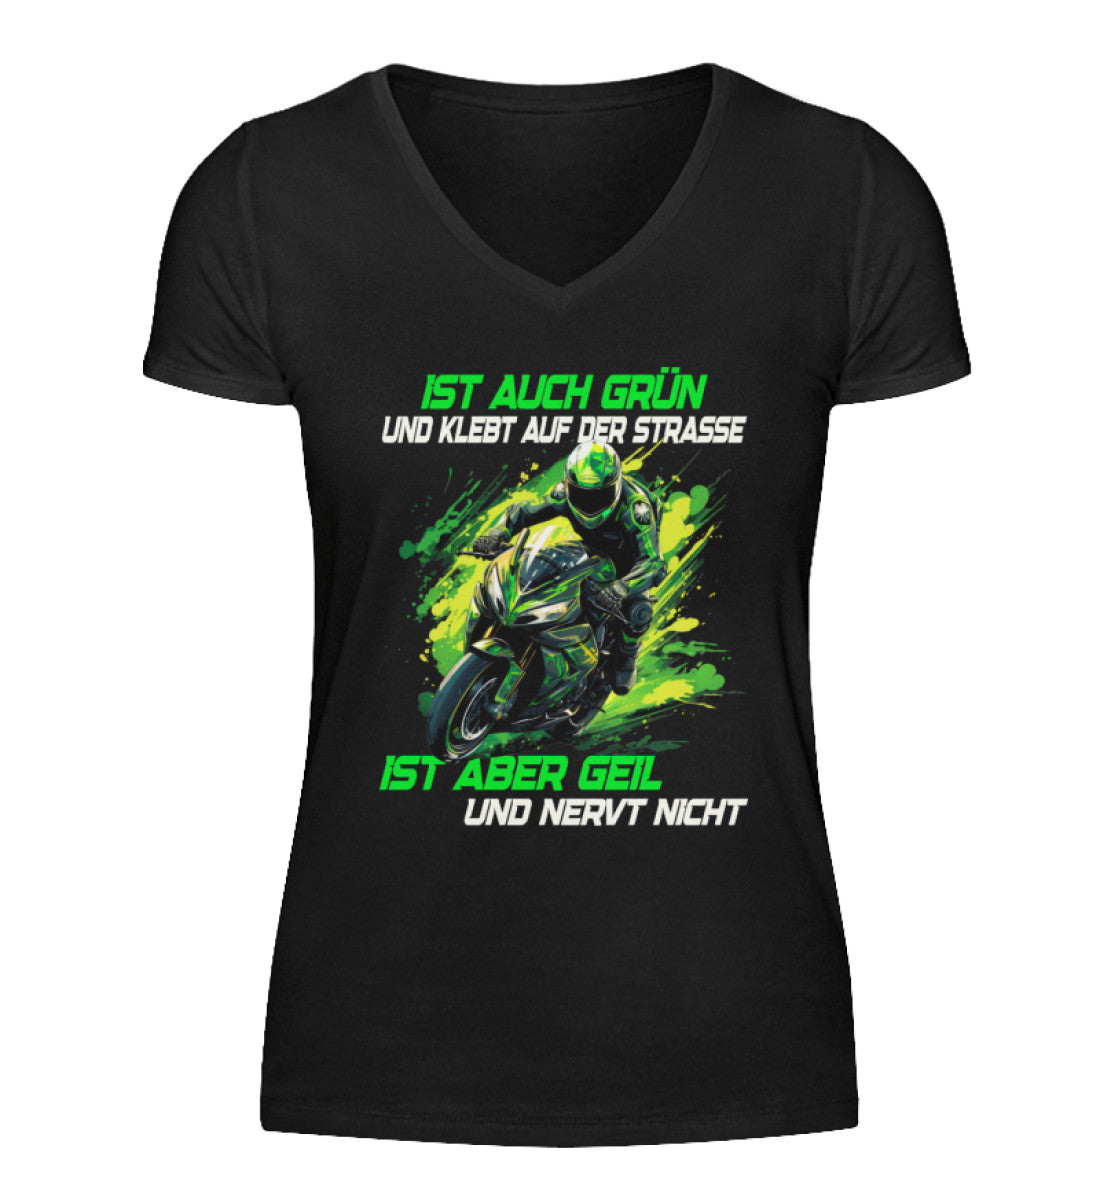 Ein T-Shirt mit V-Ausschnitt für Motorradfahrerinnen von Wingbikers mit dem Aufdruck, Supersportler - Ist auch grün und klebt auf der Straße, ist aber geil und nervt nicht, in schwarz.